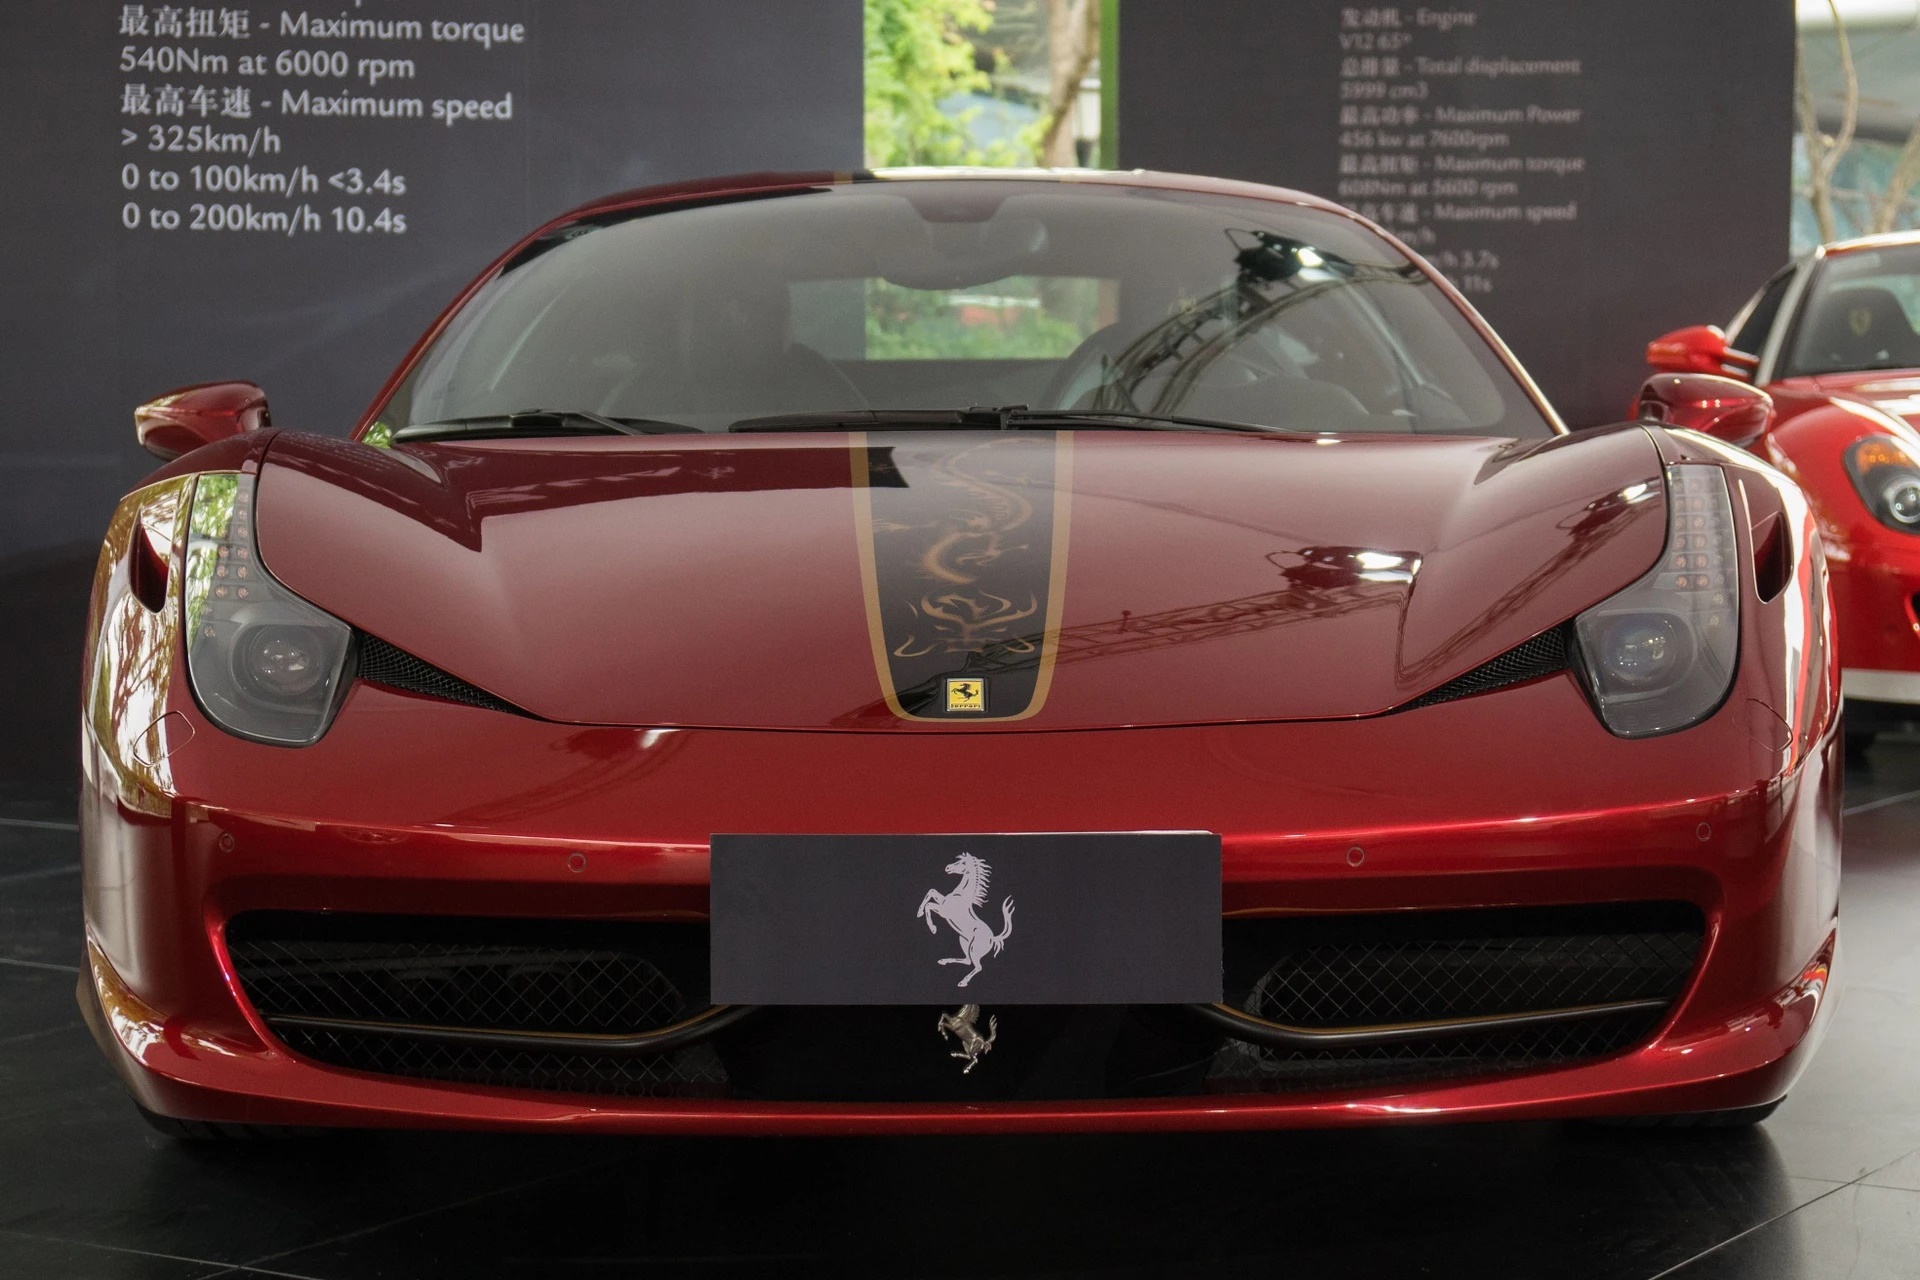 Siêu xe lấy cảm hứng từ Rồng, Ferrari 458 Italia China 20th Anniversary